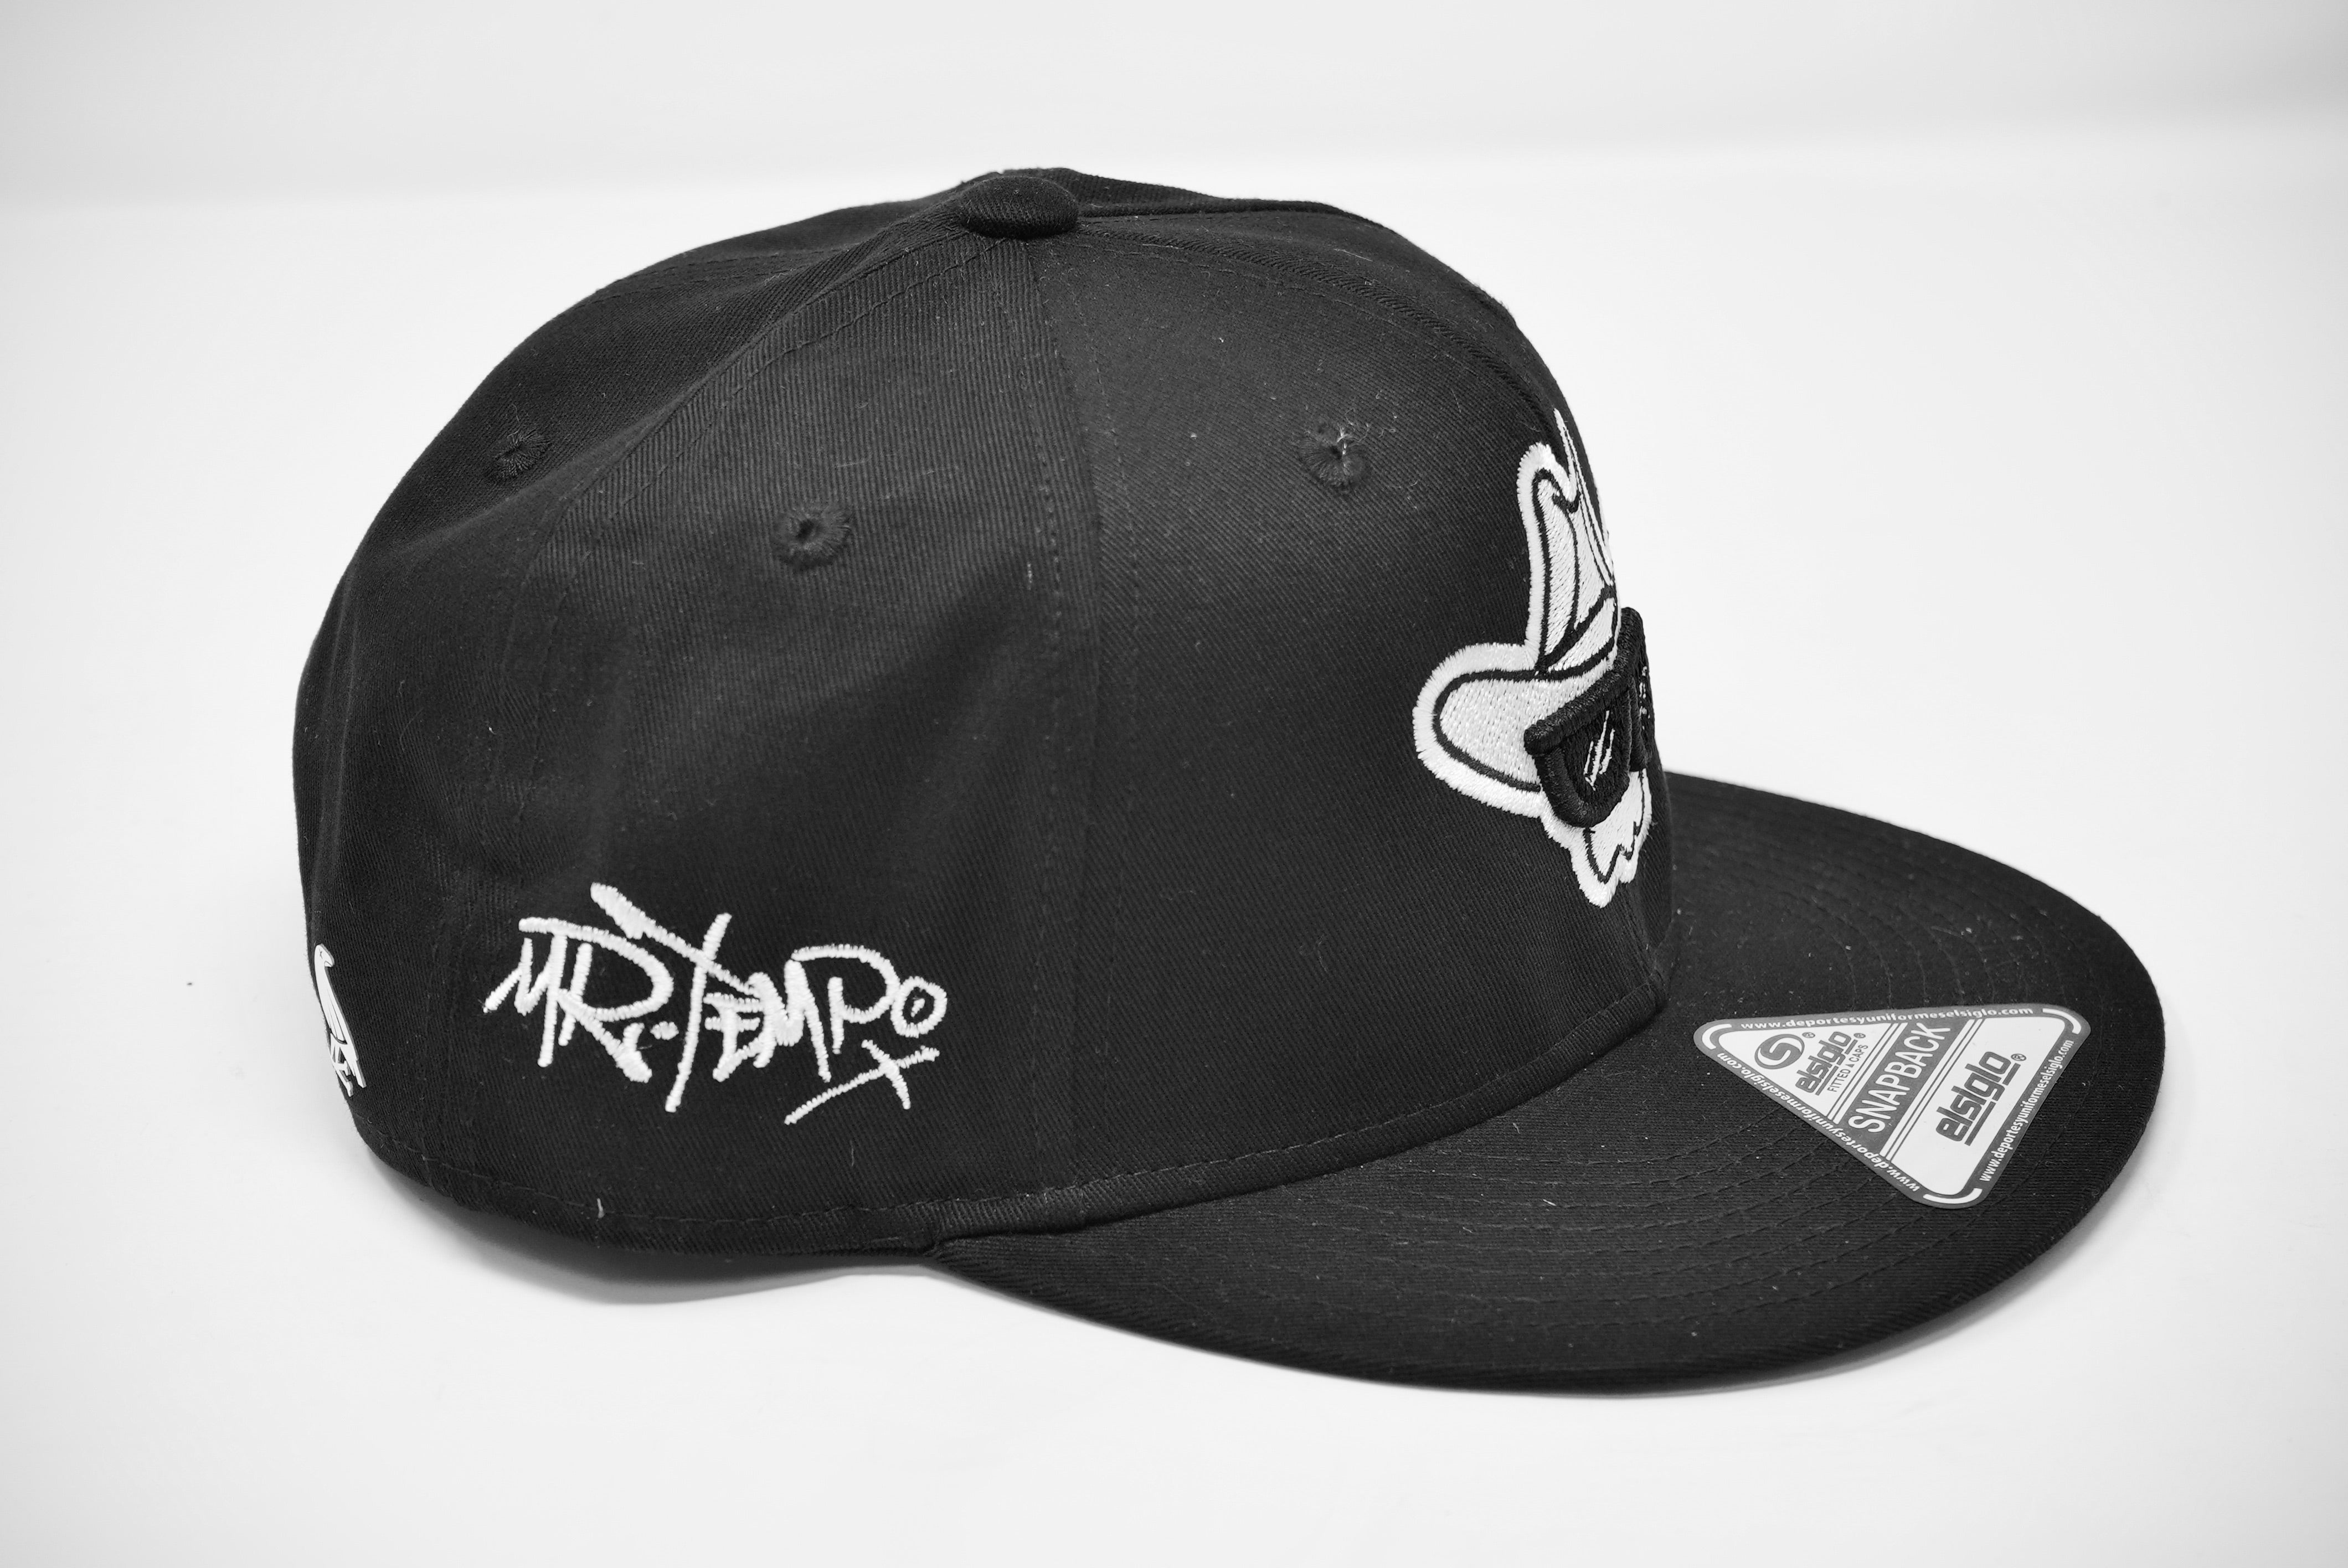 Mr.Tempo Black/White Hat